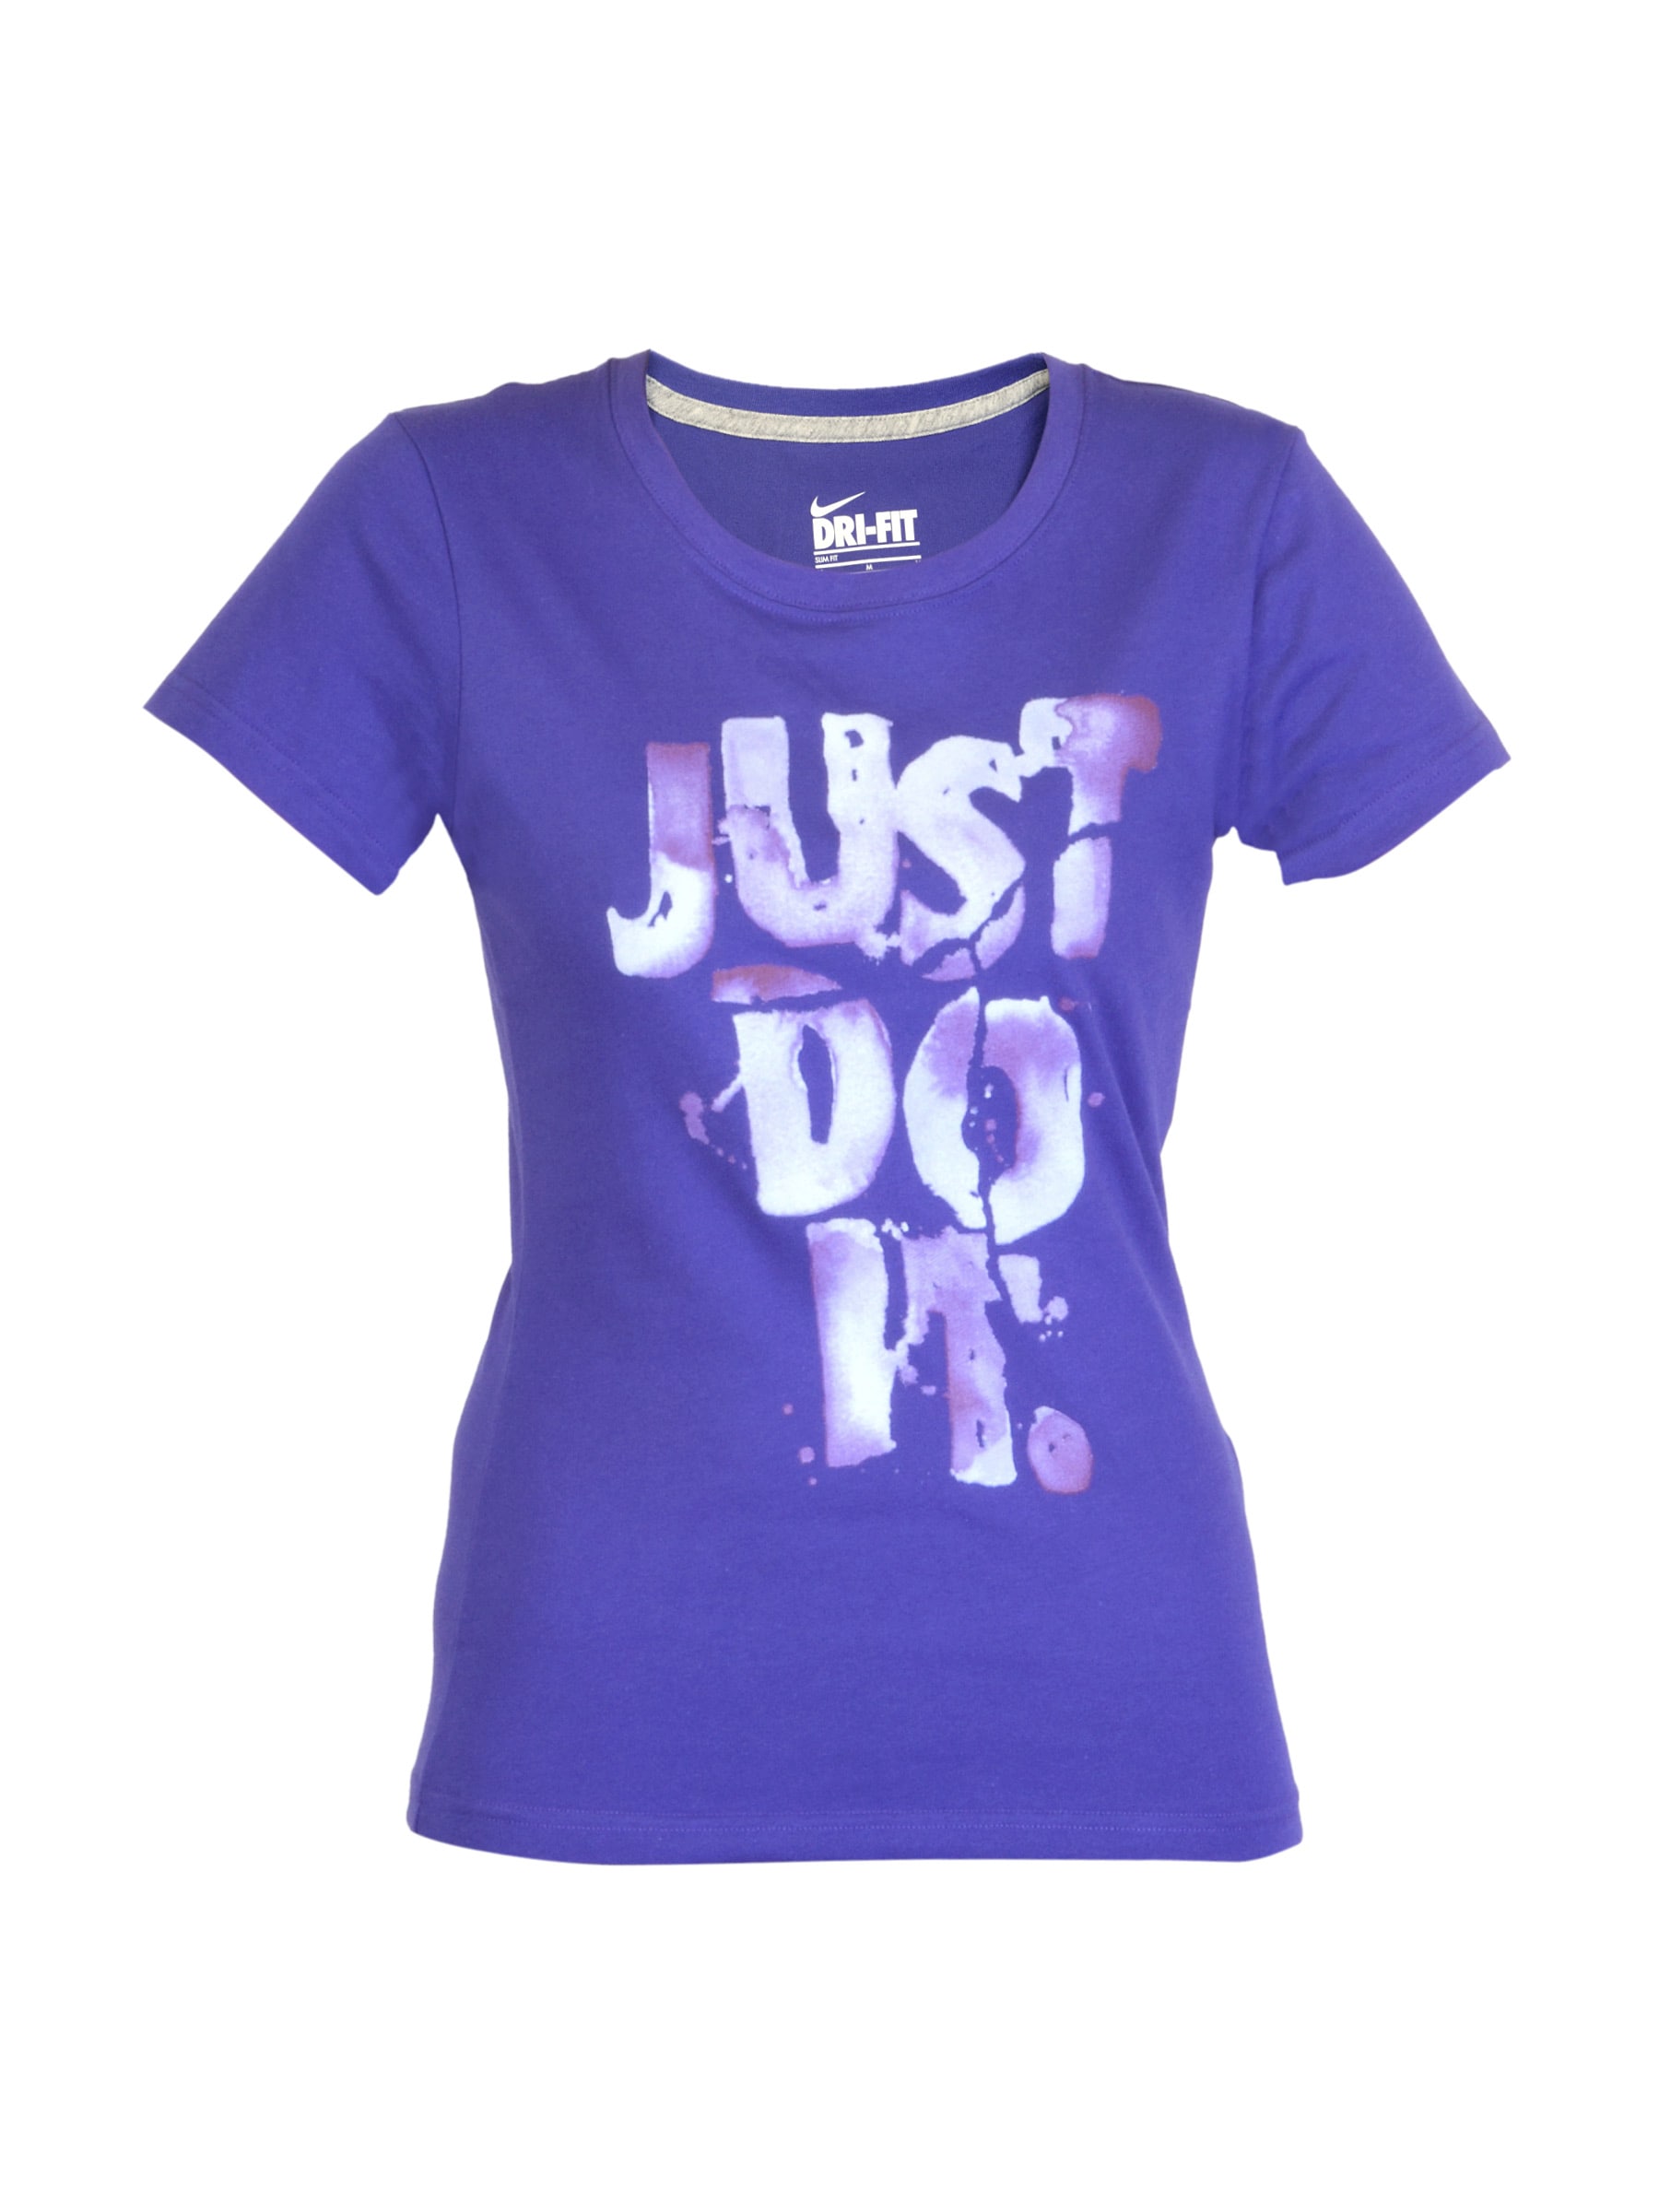 Nike Women Slim Crew Purple T-shirt